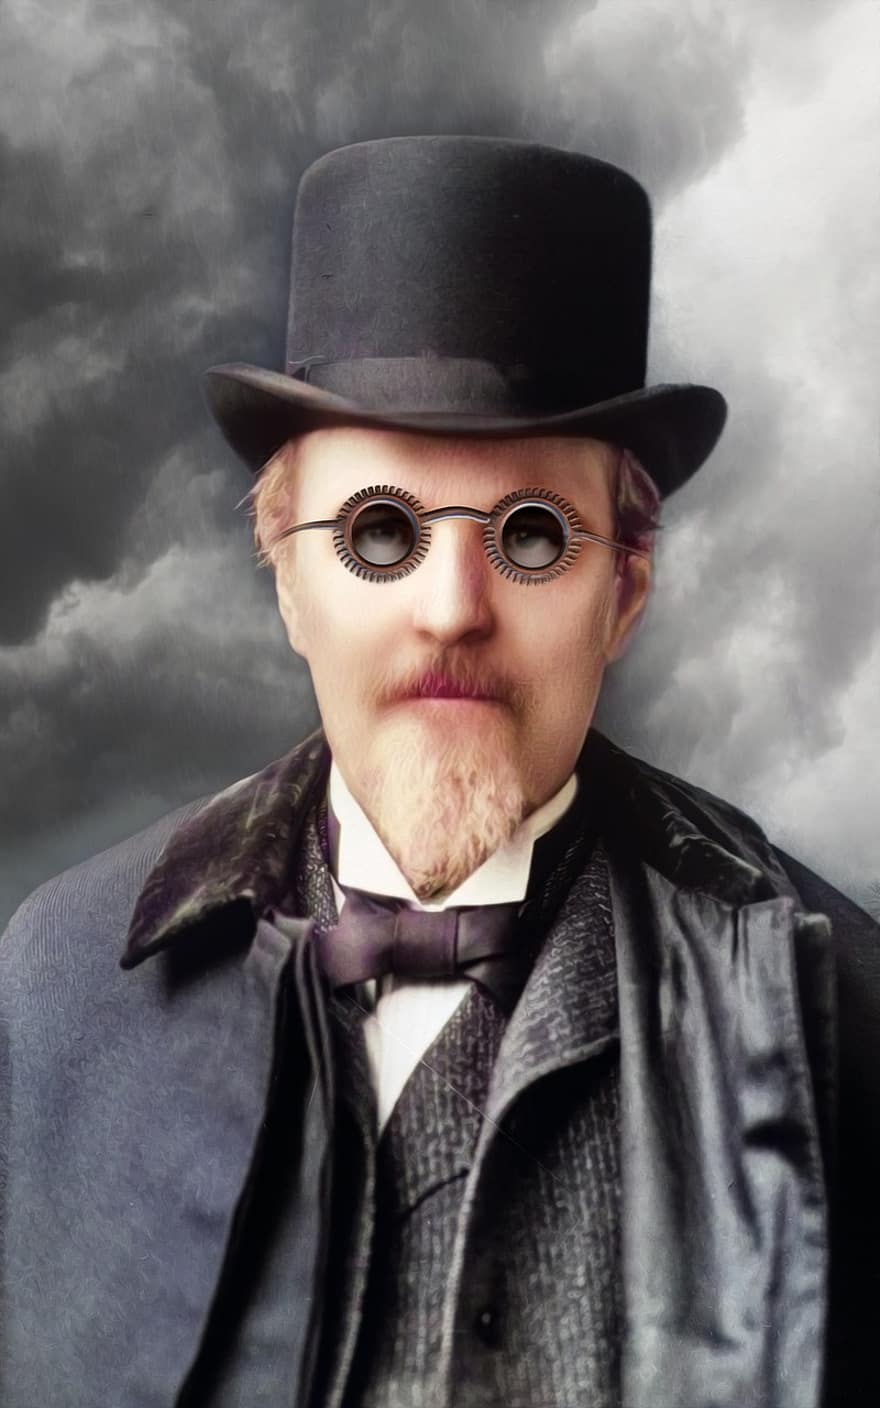 steampunk, signore, ritratto, uomo, bicchieri, occhiali, ingranaggi, vittoriano, cappello, cappotto, barba